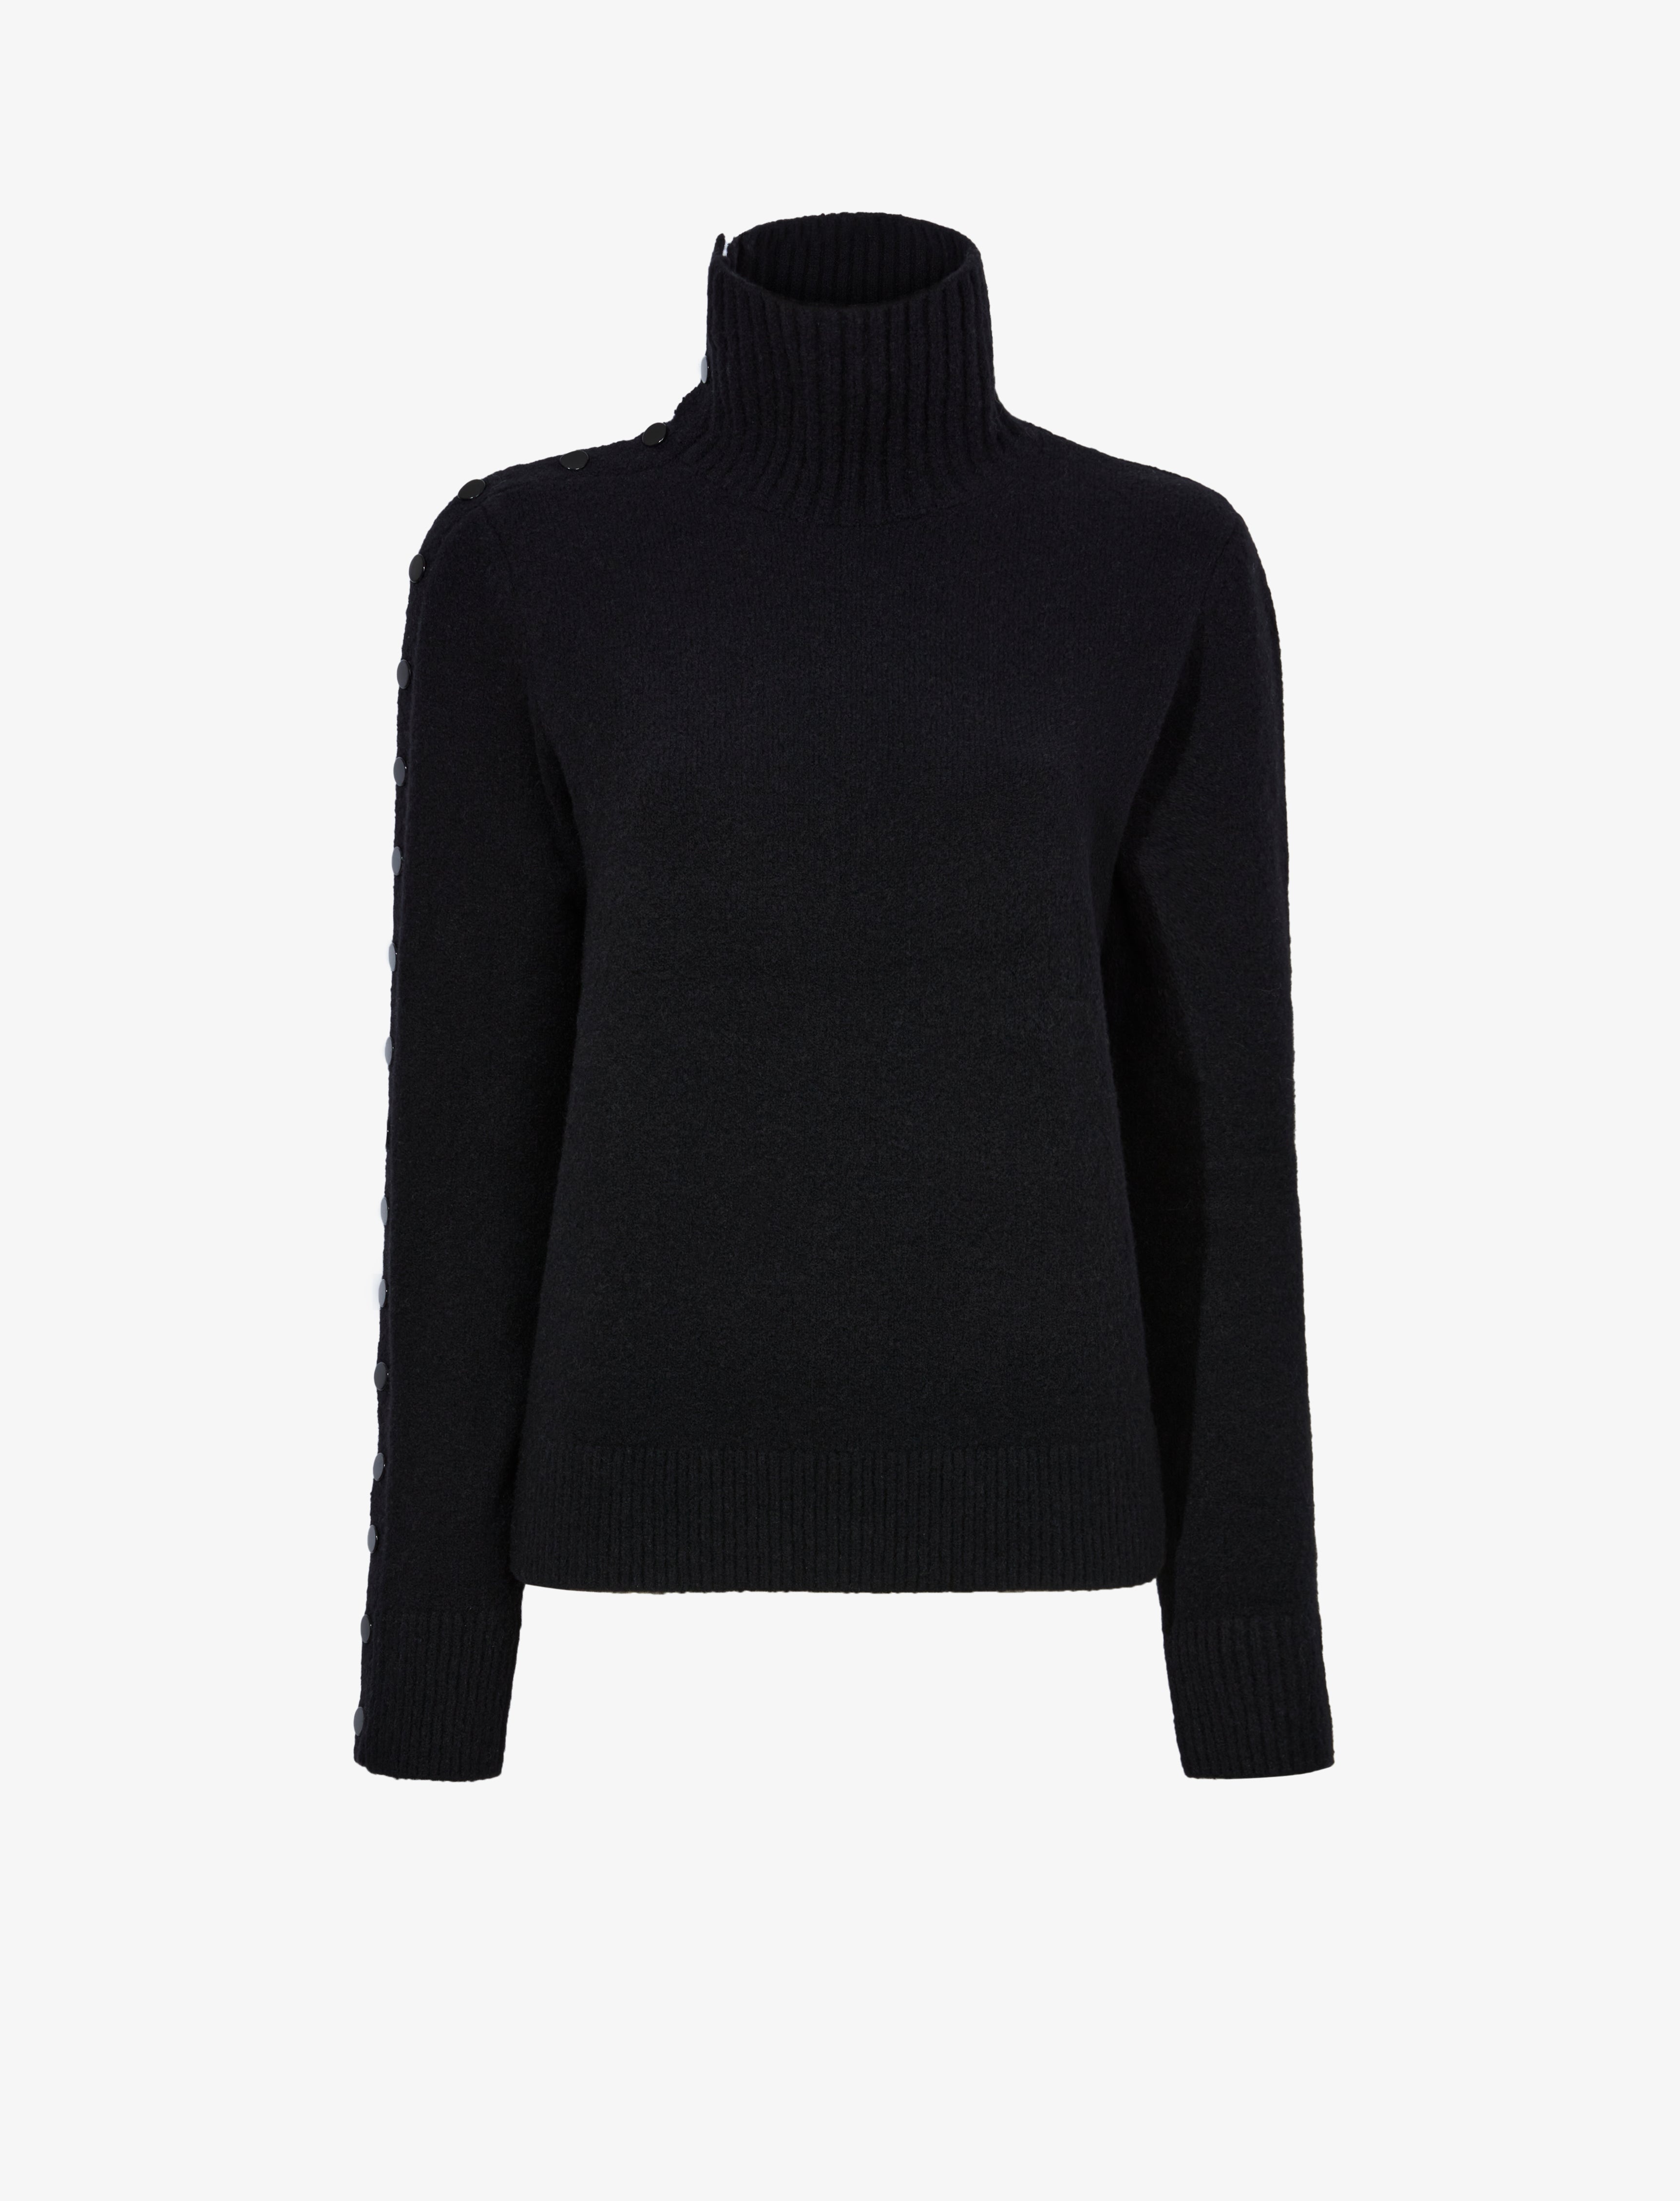 Camilla Sweater in Lofty Eco Cashmere - 1